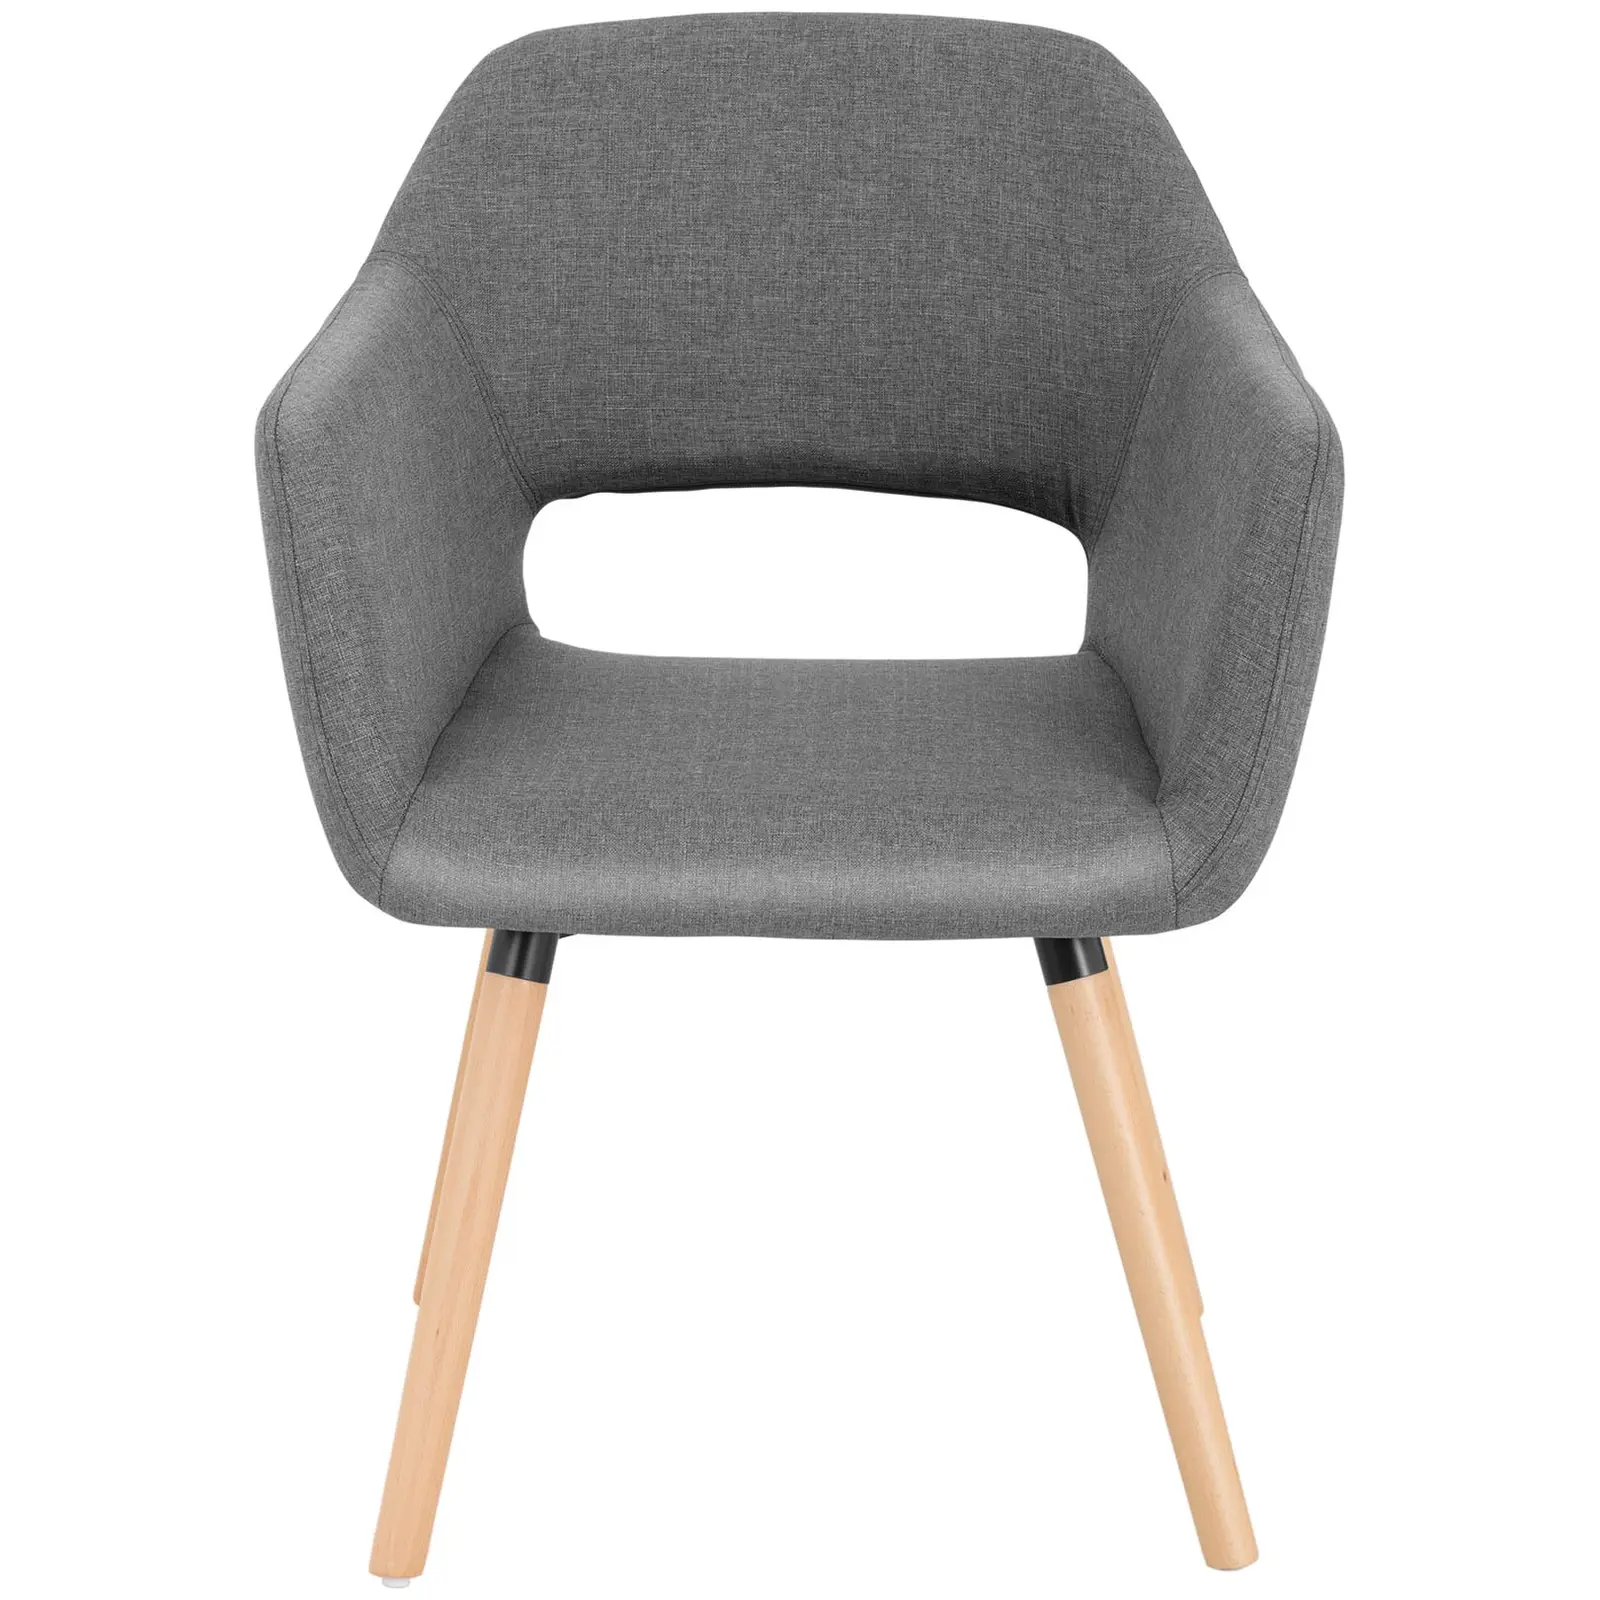 Chaise en tissu - 160 kg max. - Surface d'assise de 42 x 47 cm - Coloris gris